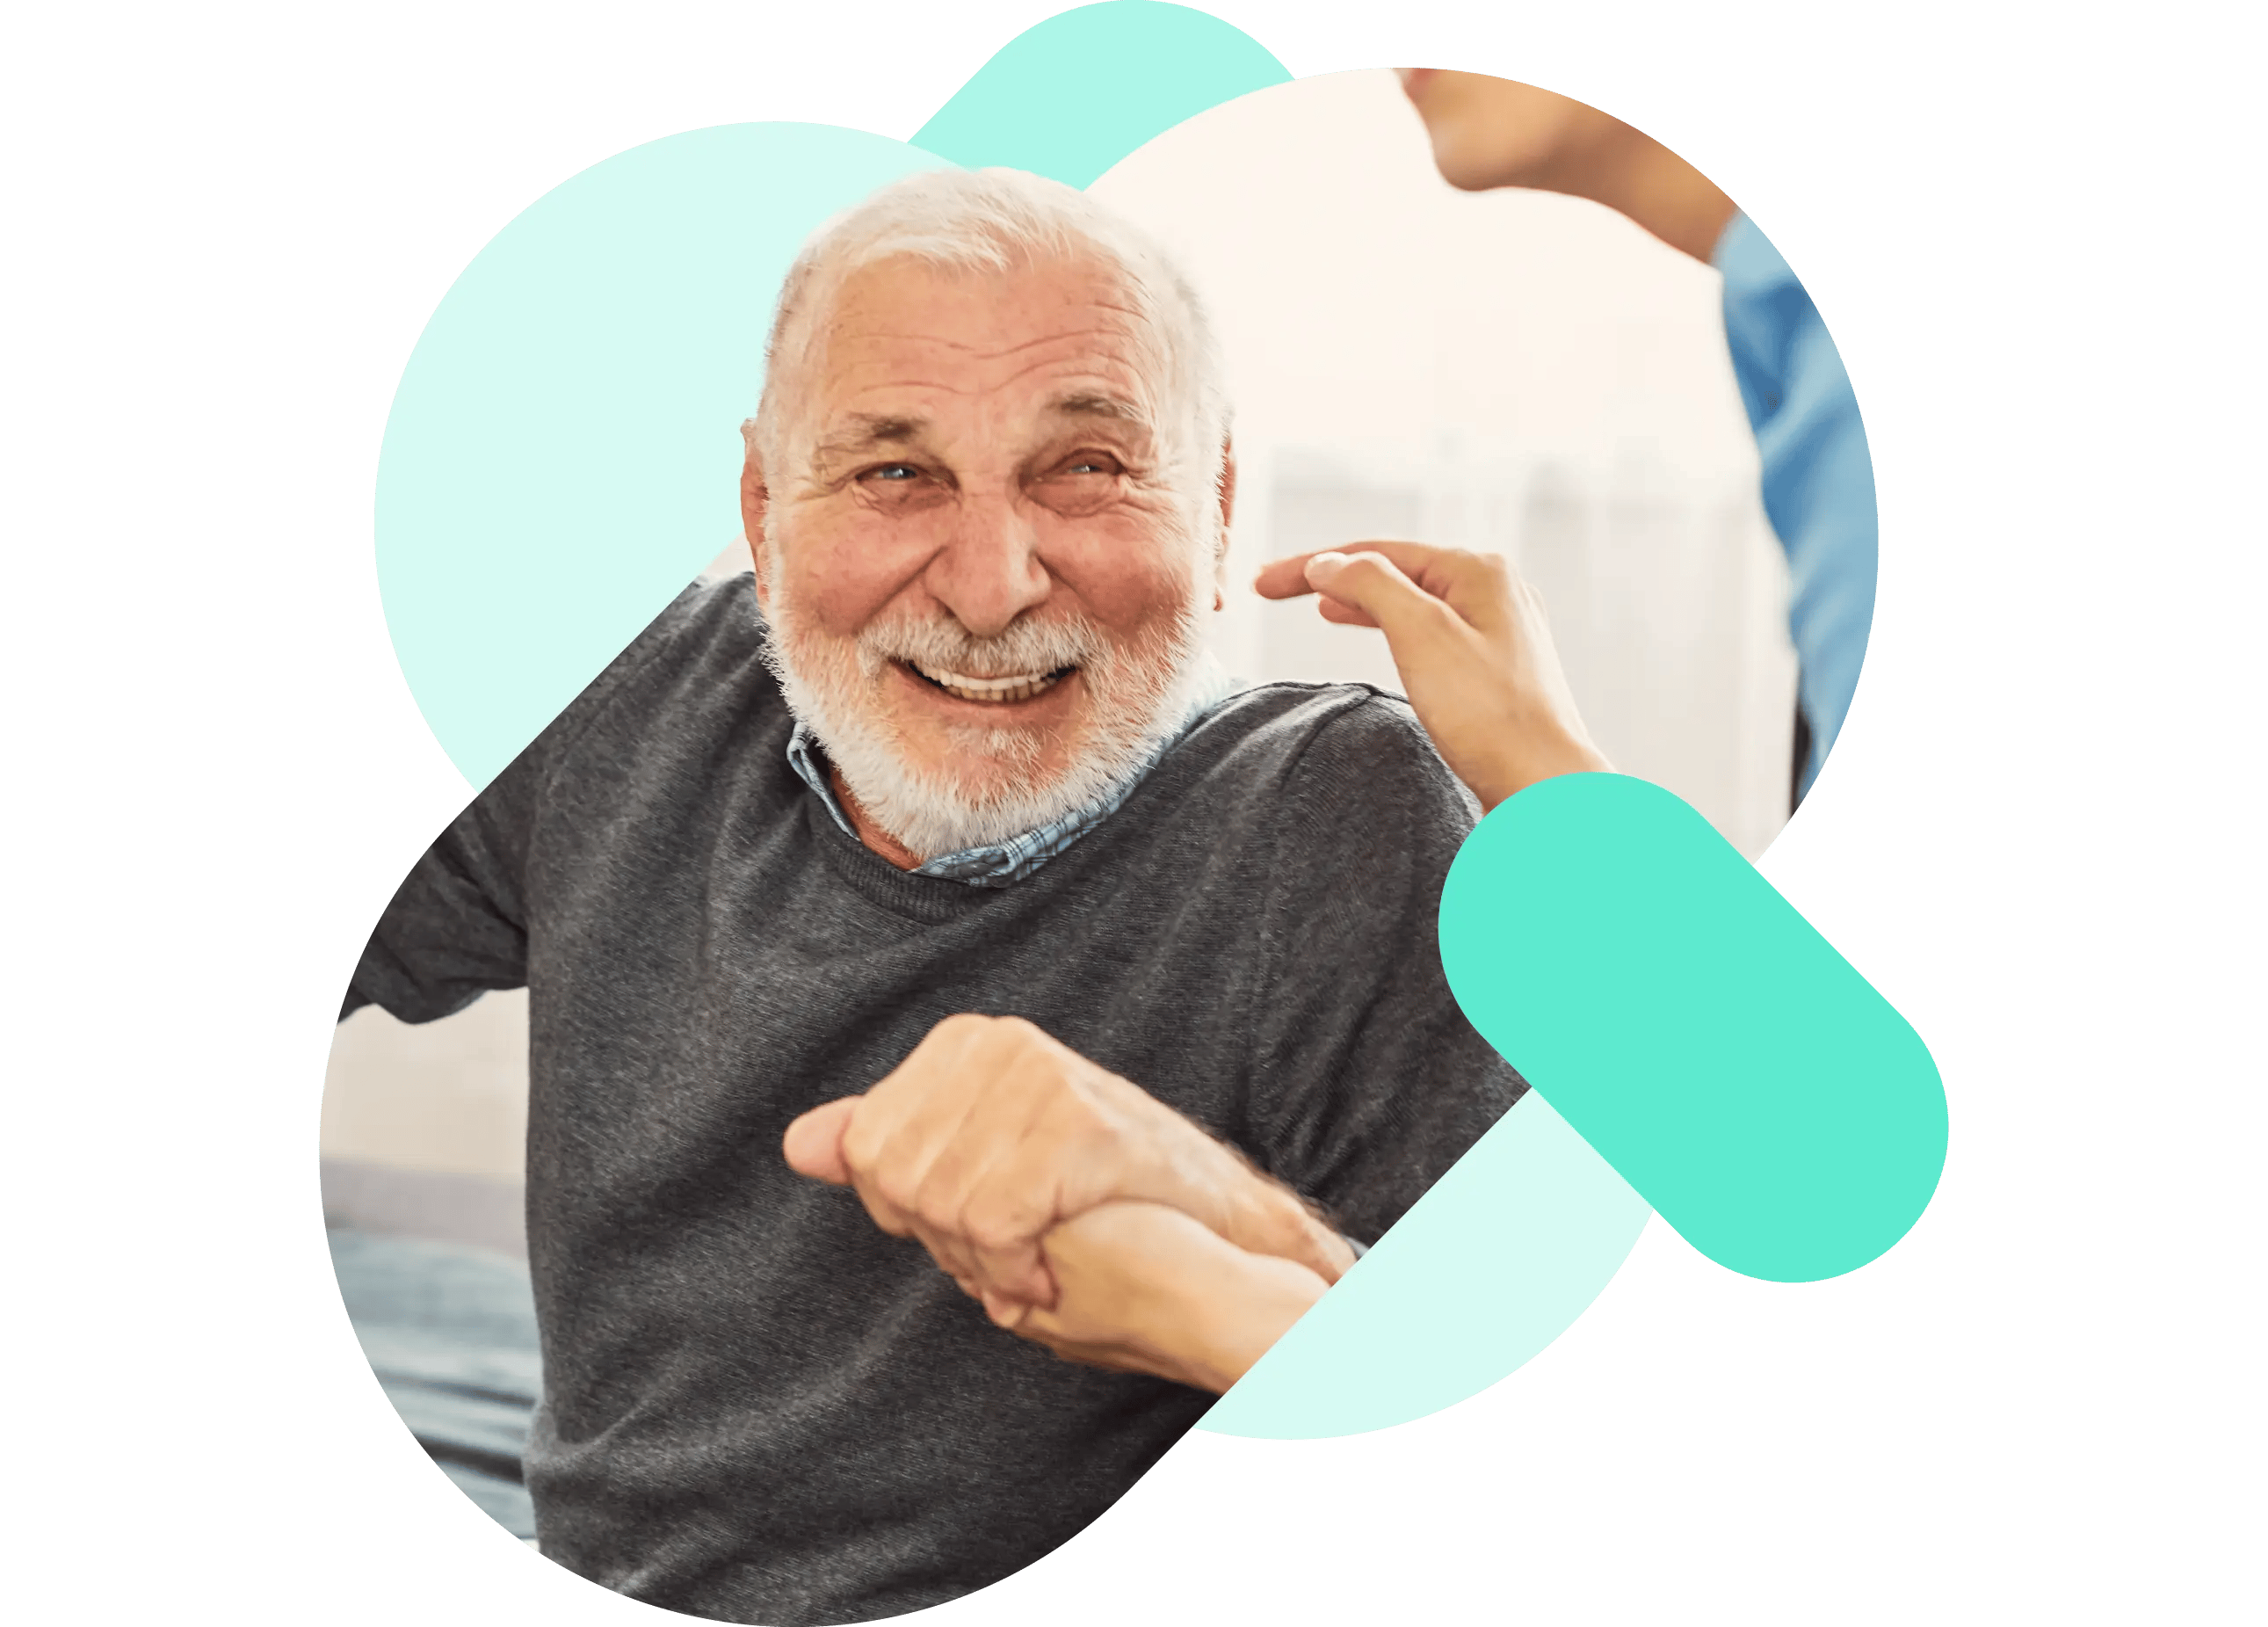 A happy elderly gentleman receiving homecare